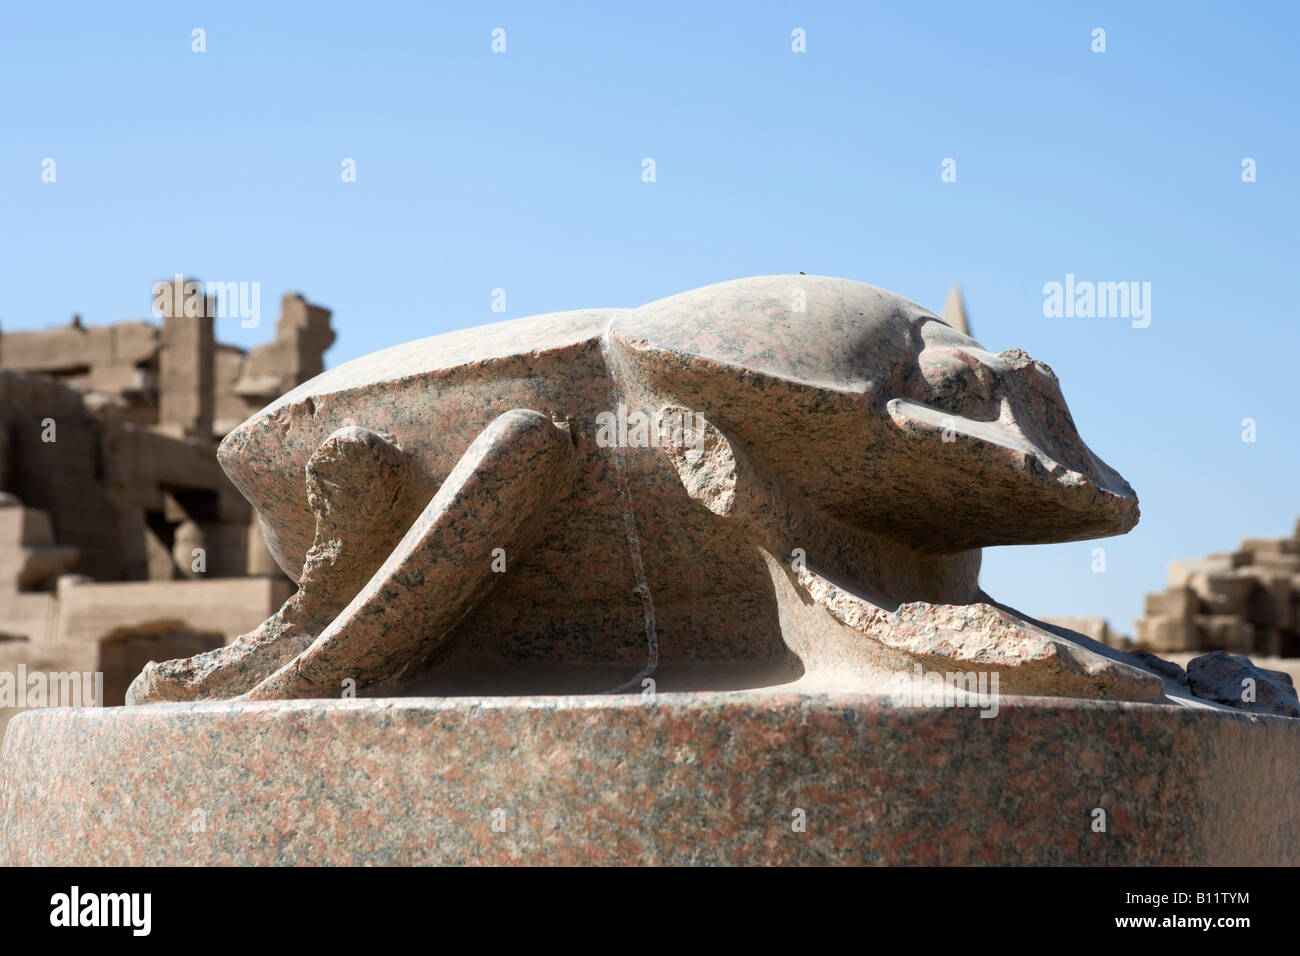 Riesige Skarabäus-Käfer vertreten Khepri wiedergeboren Sonne, Bezirk des Amun, Tempel von Karnak, Luxor, Nil Senke, Ägypten Stockfoto